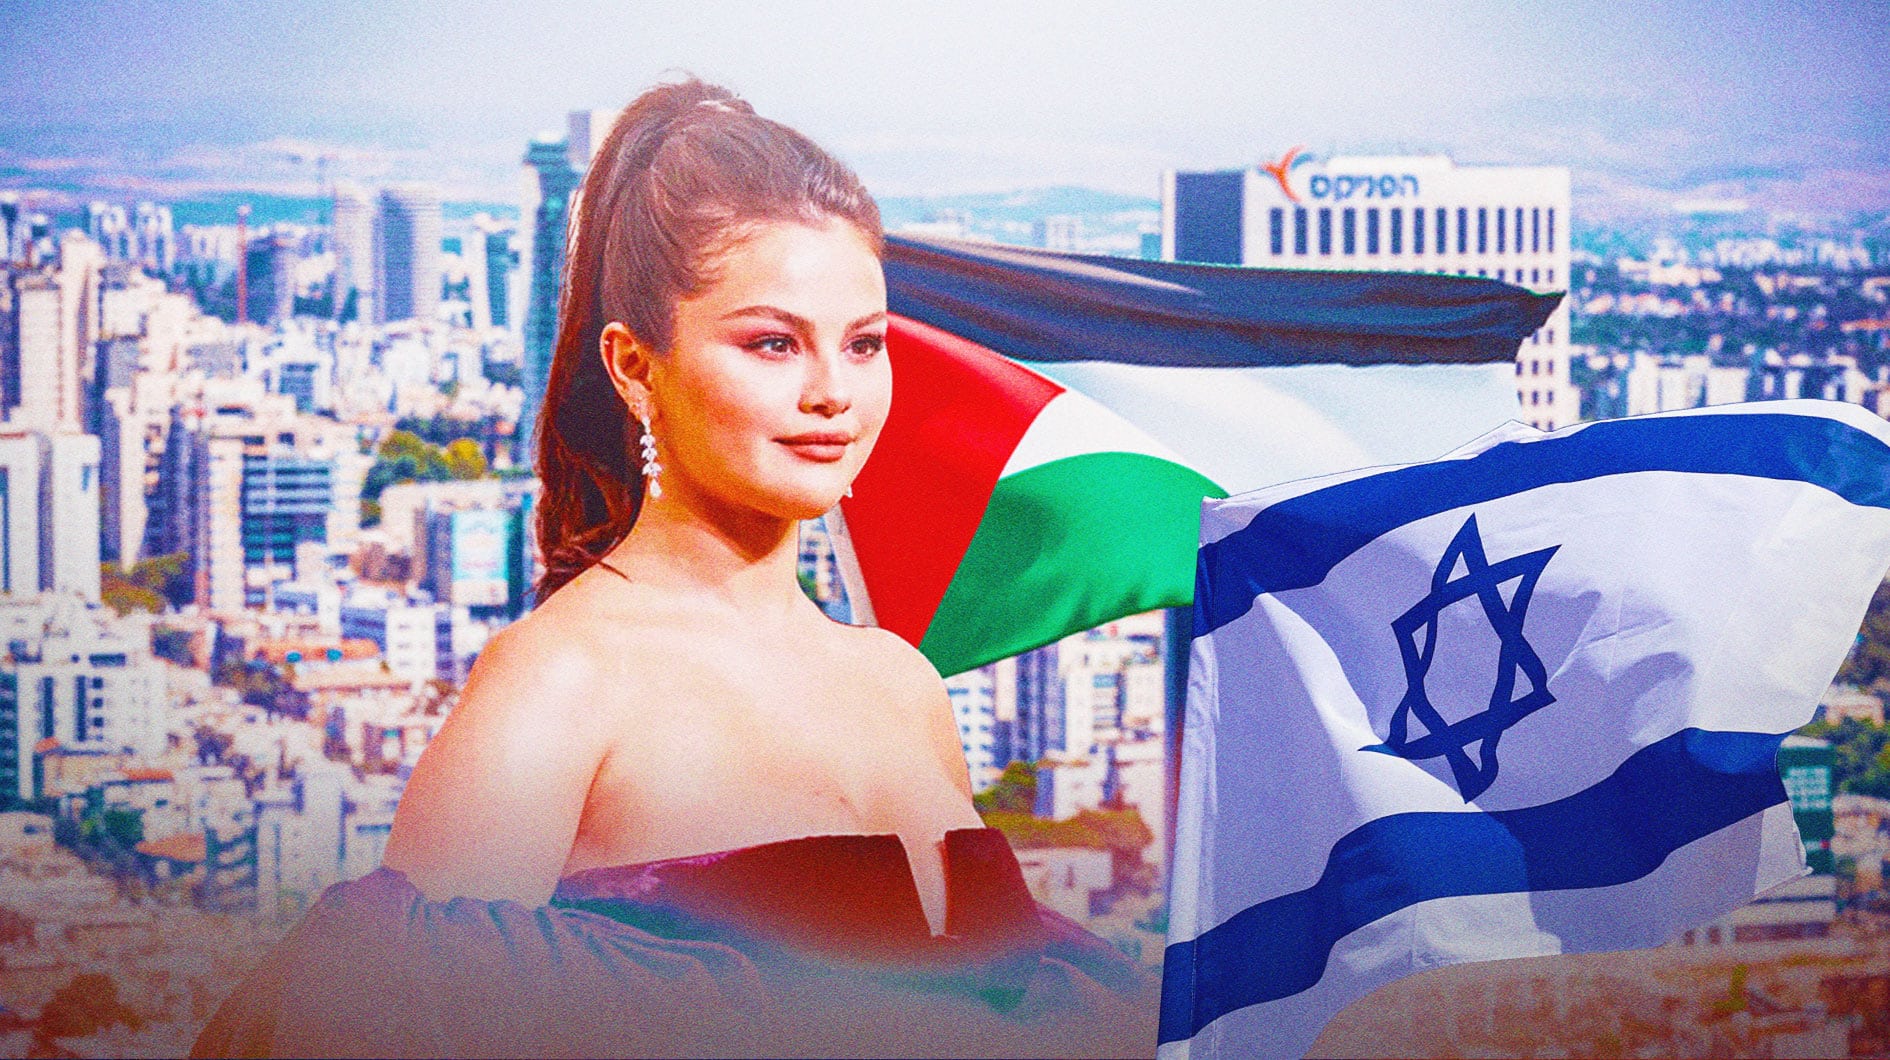 Selena Gomez slammed over her IsraelHamas war comments